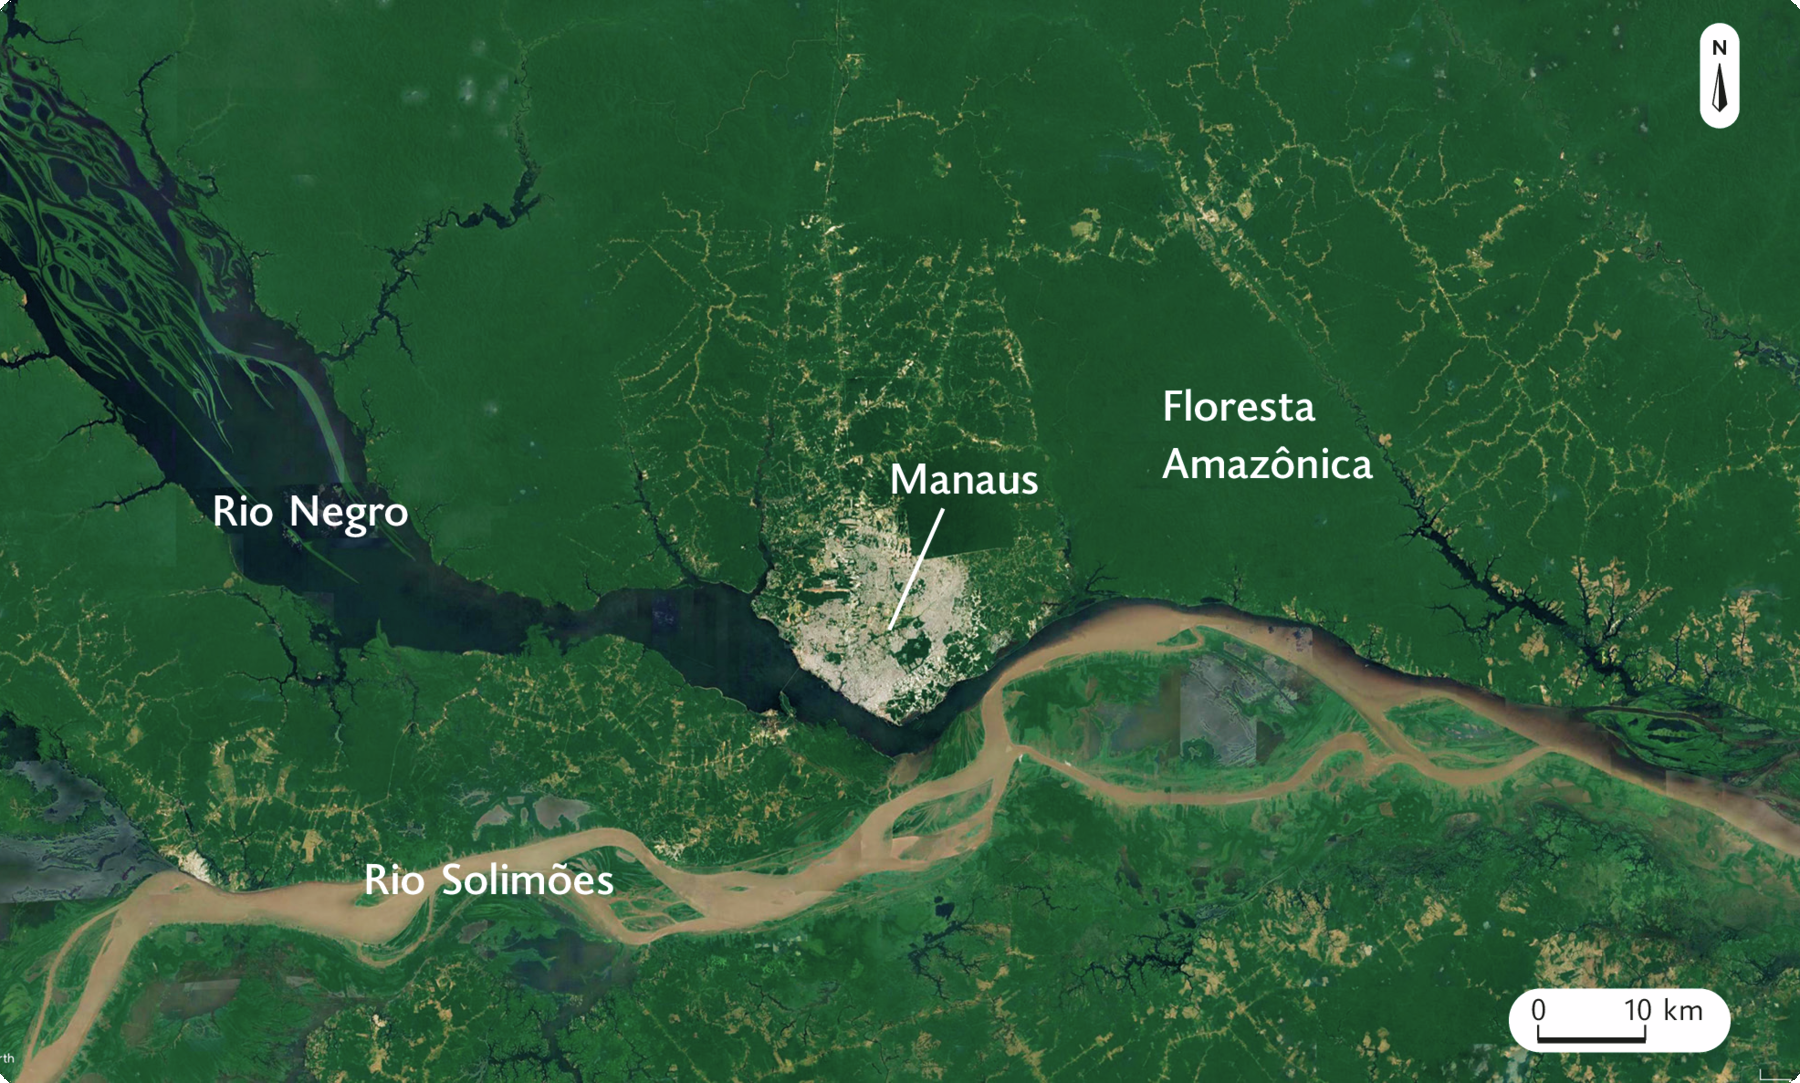 Fotografia. Imagem de satélite mostrando o Rio Solimões e o Rio Negro que se unem compondo um único curso. Na margem central do Rio Negro está Manaus e à direita dela, a Floresta Amazônia. No canto superior direito, seta apontando para o norte, e na parte inferior, a escala: 10 quilômetros por centímetro.